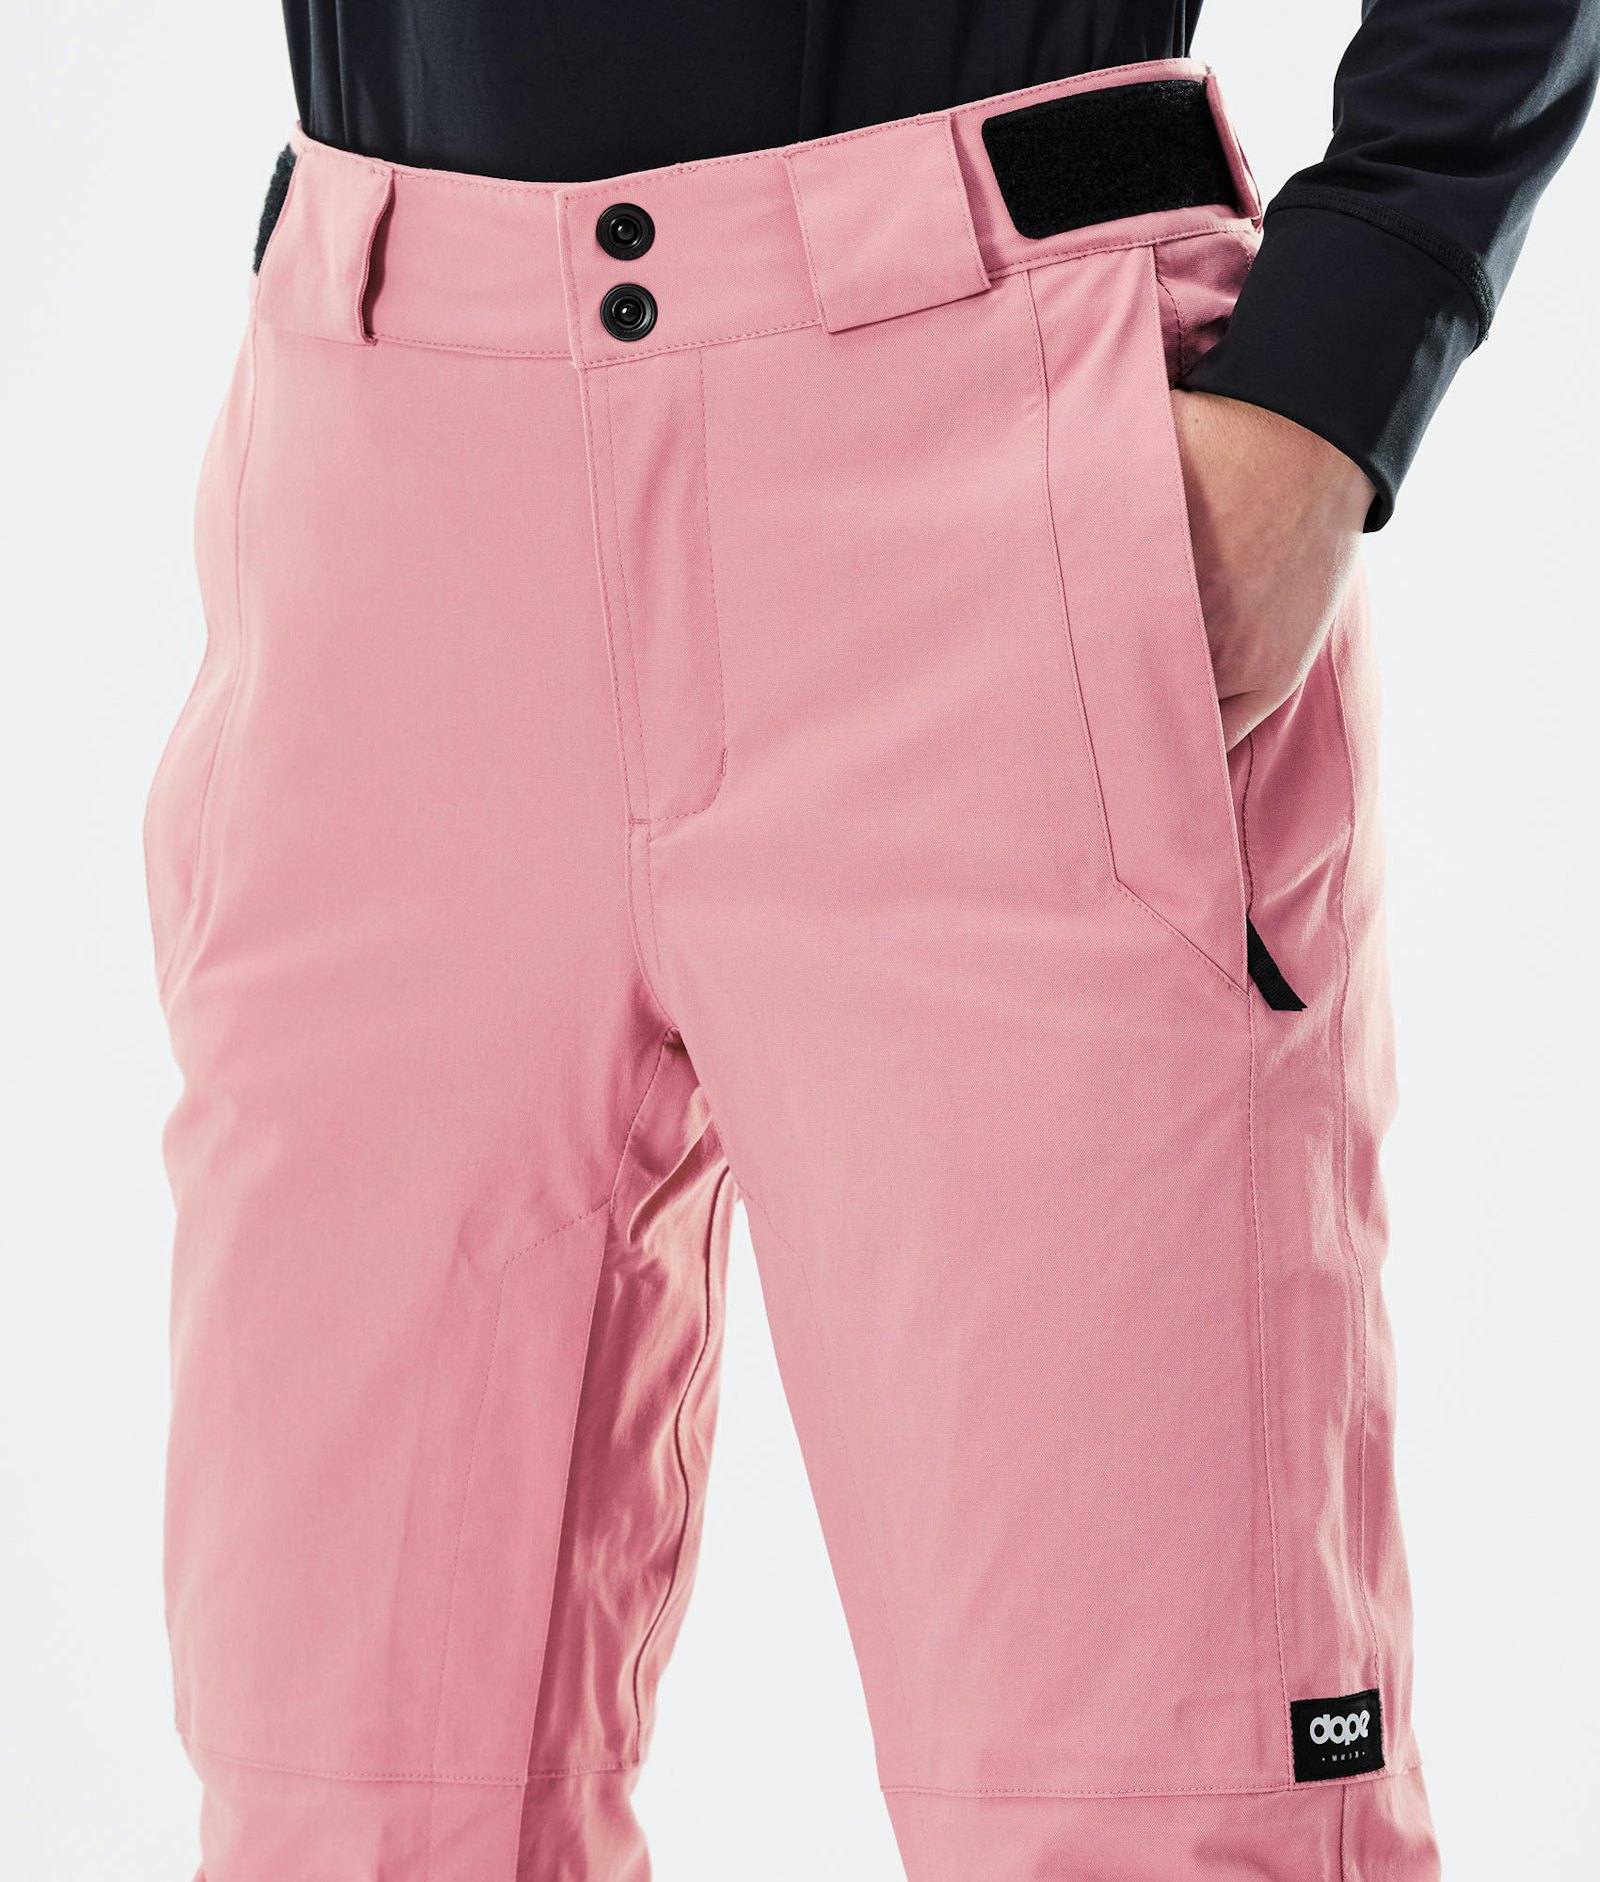 Dope Con W 2020 Spodnie Snowboardowe Kobiety Pink